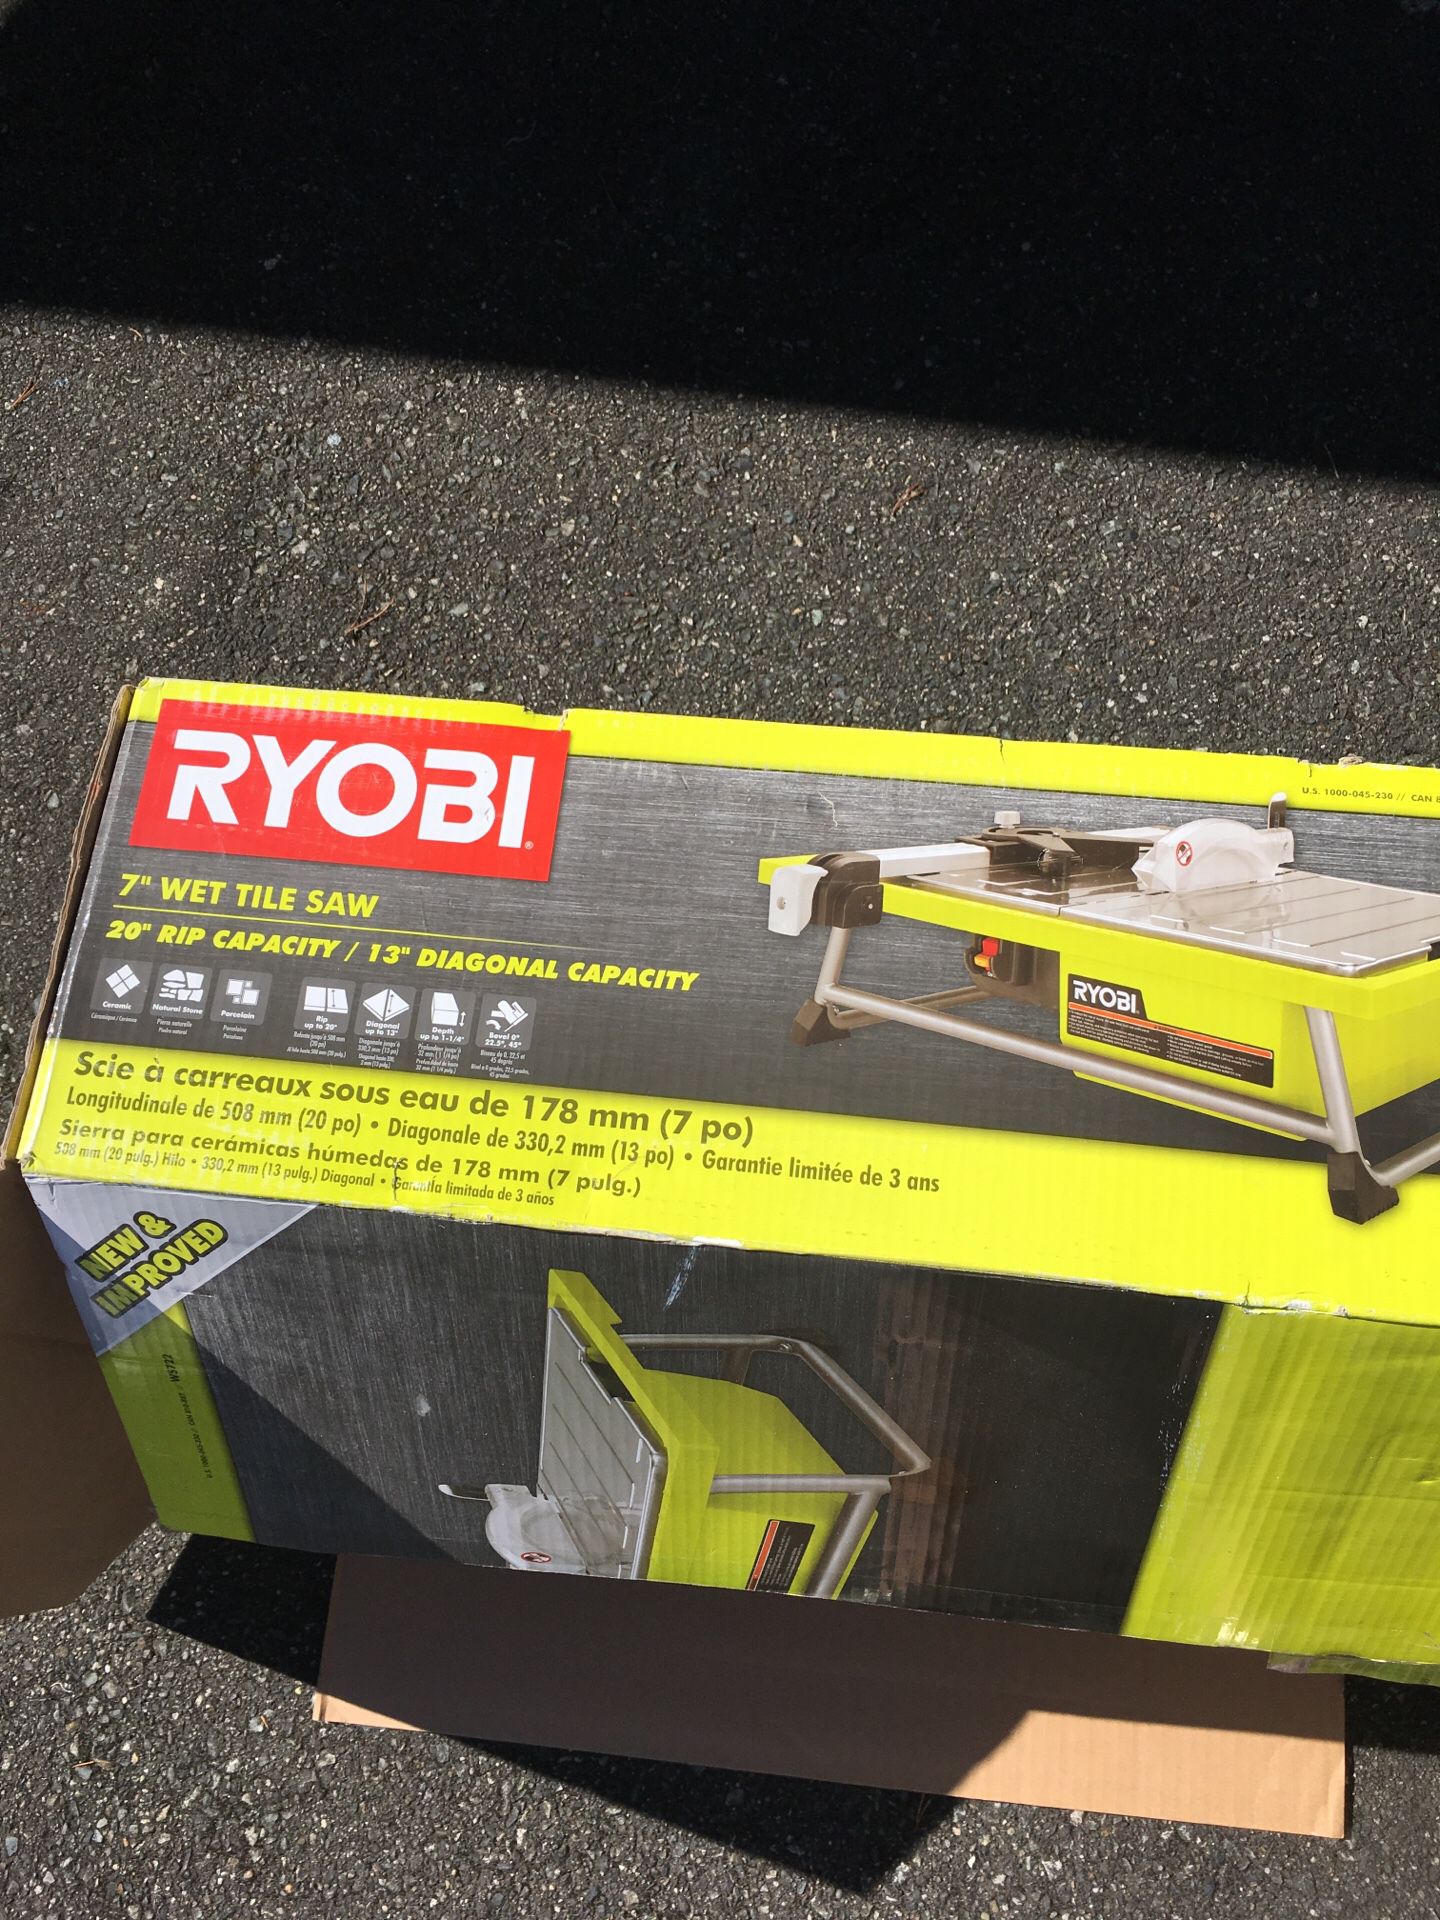 Ryobi 7” wet tile saw